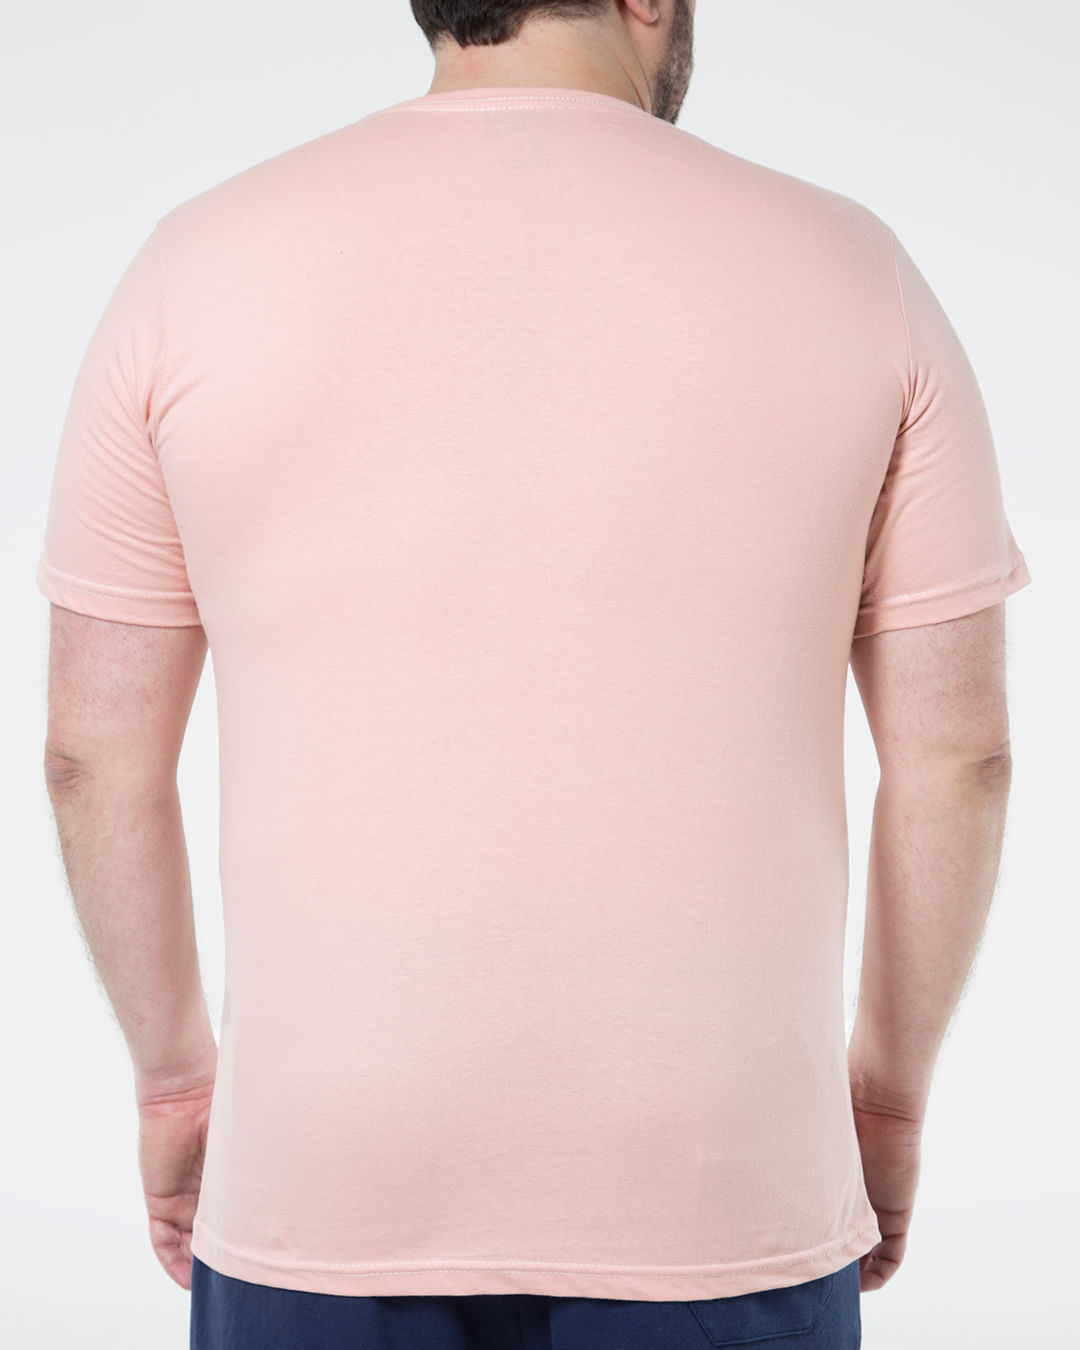 Camiseta-Masculina-Plus-Size-Basica-Rosa-Claro